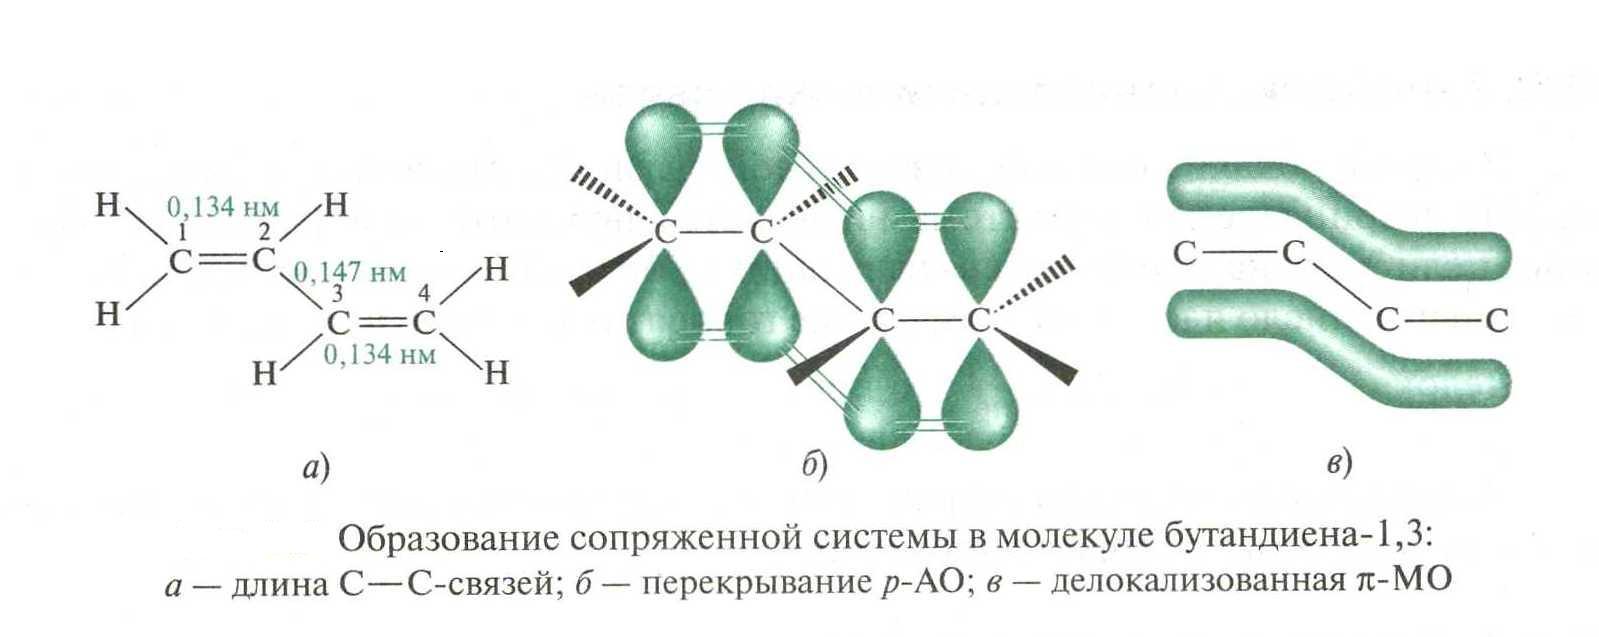 Бутадиен гибридизация атома углерода. Электронное строение молекулы бутадиена-1.3. Строение молекулы бутадиена 1.3. Сопряженные системы бутадиен 1 3. Система сопряженных связей в молекулах.